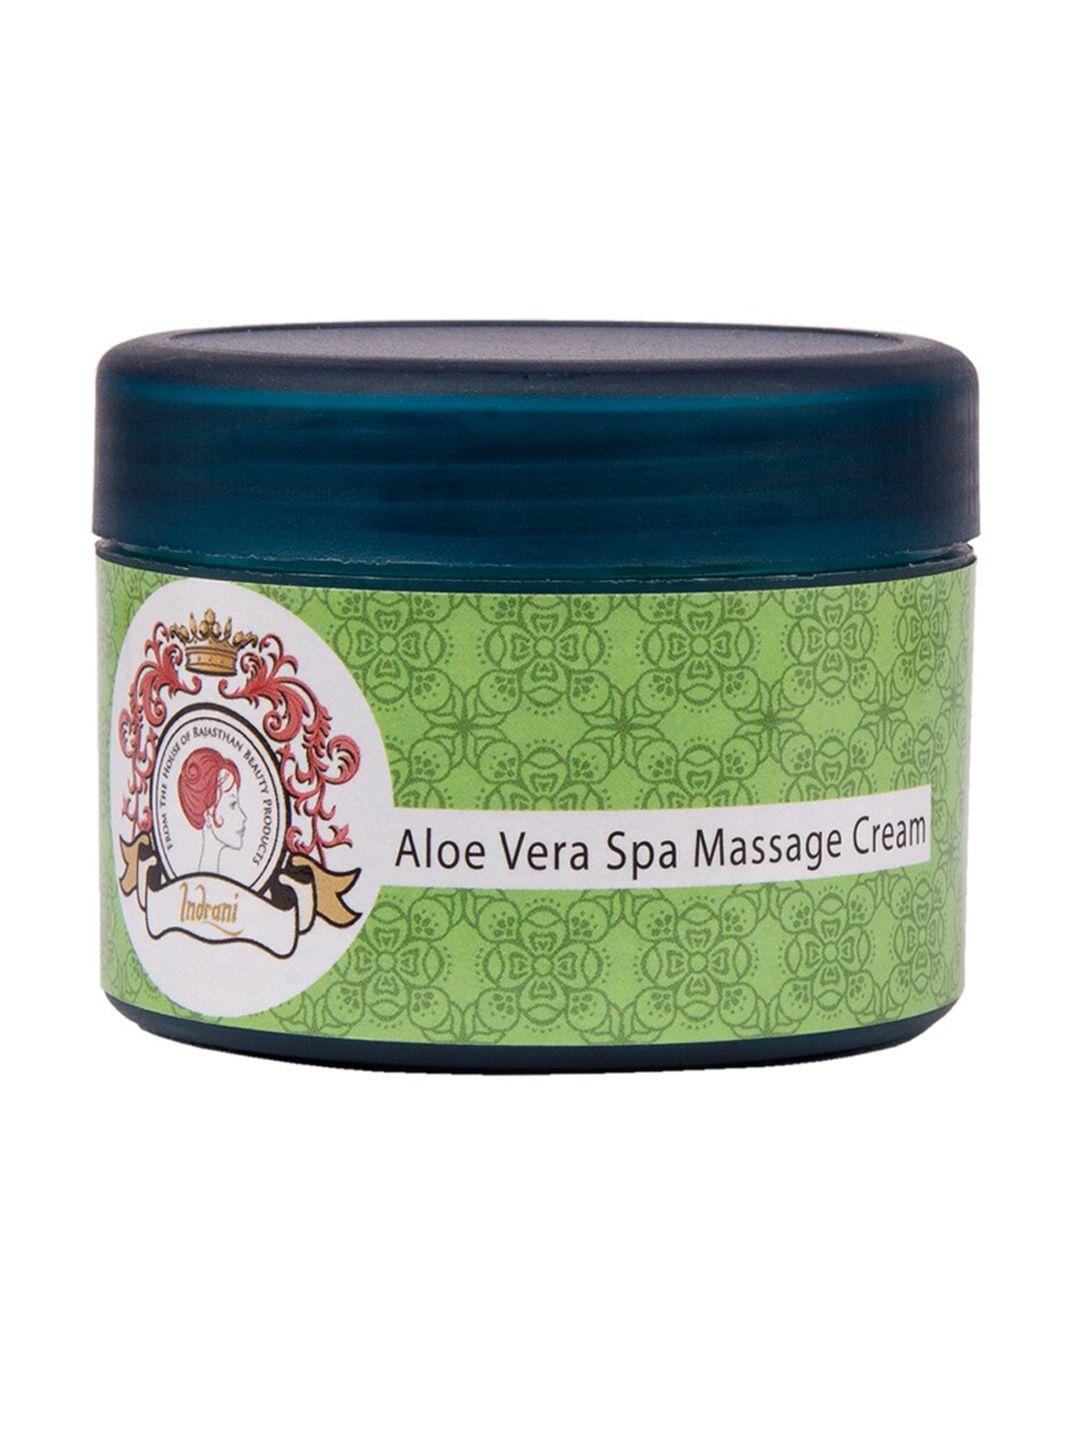 indrani cosmetics aloe vera spa massage cream - 50 g